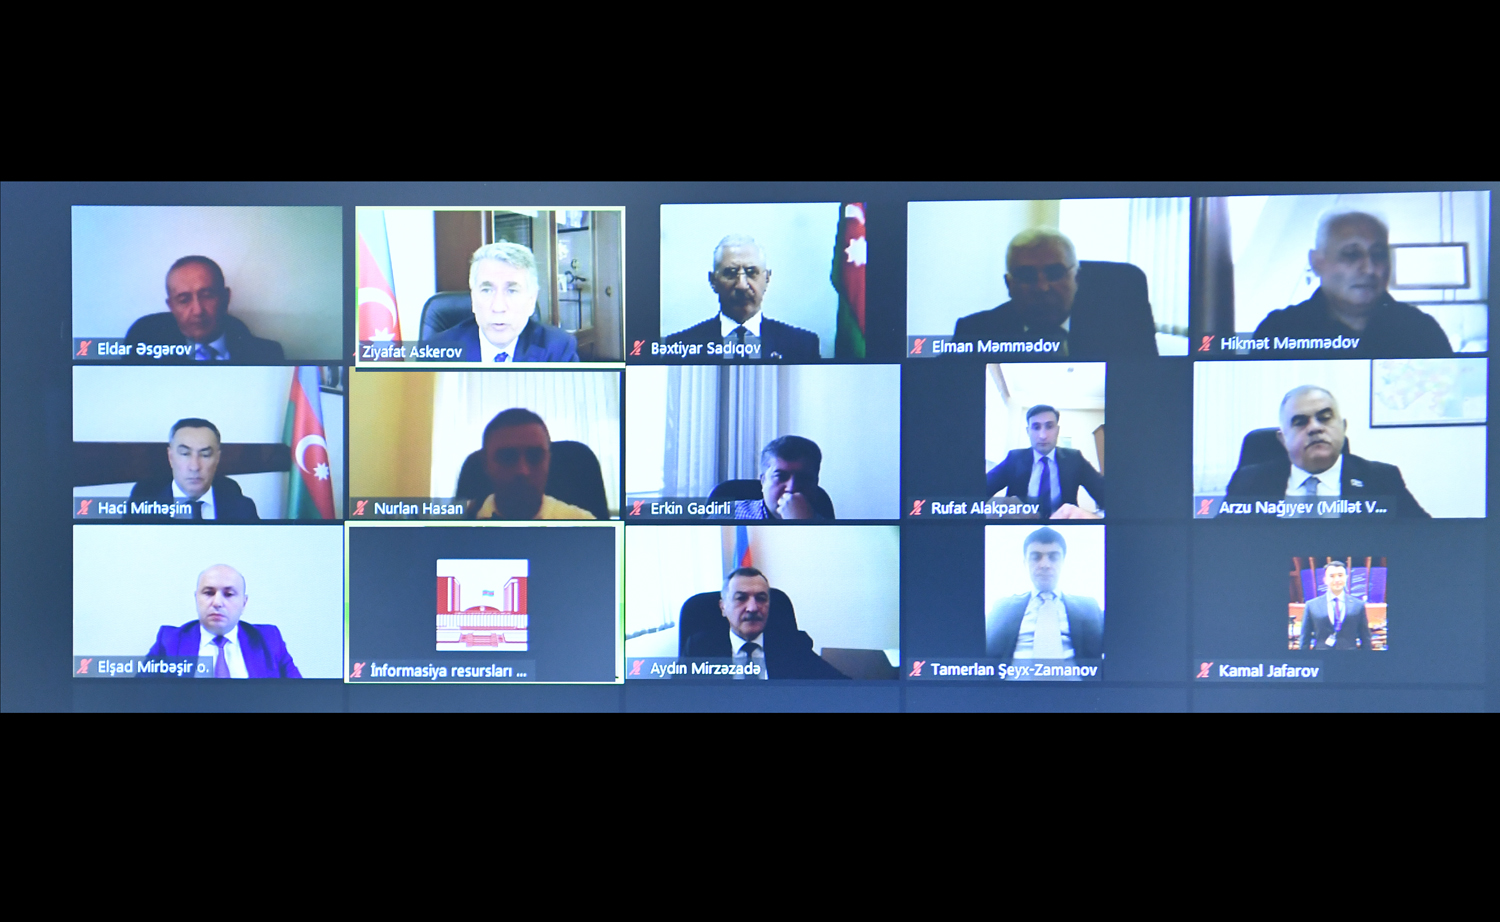 Müdafiə, təhlükəsizlik və korrupsiya ilə mübarizə komitəsi payız sessiyasında videoformatda ilk iclasına toplaşıb.